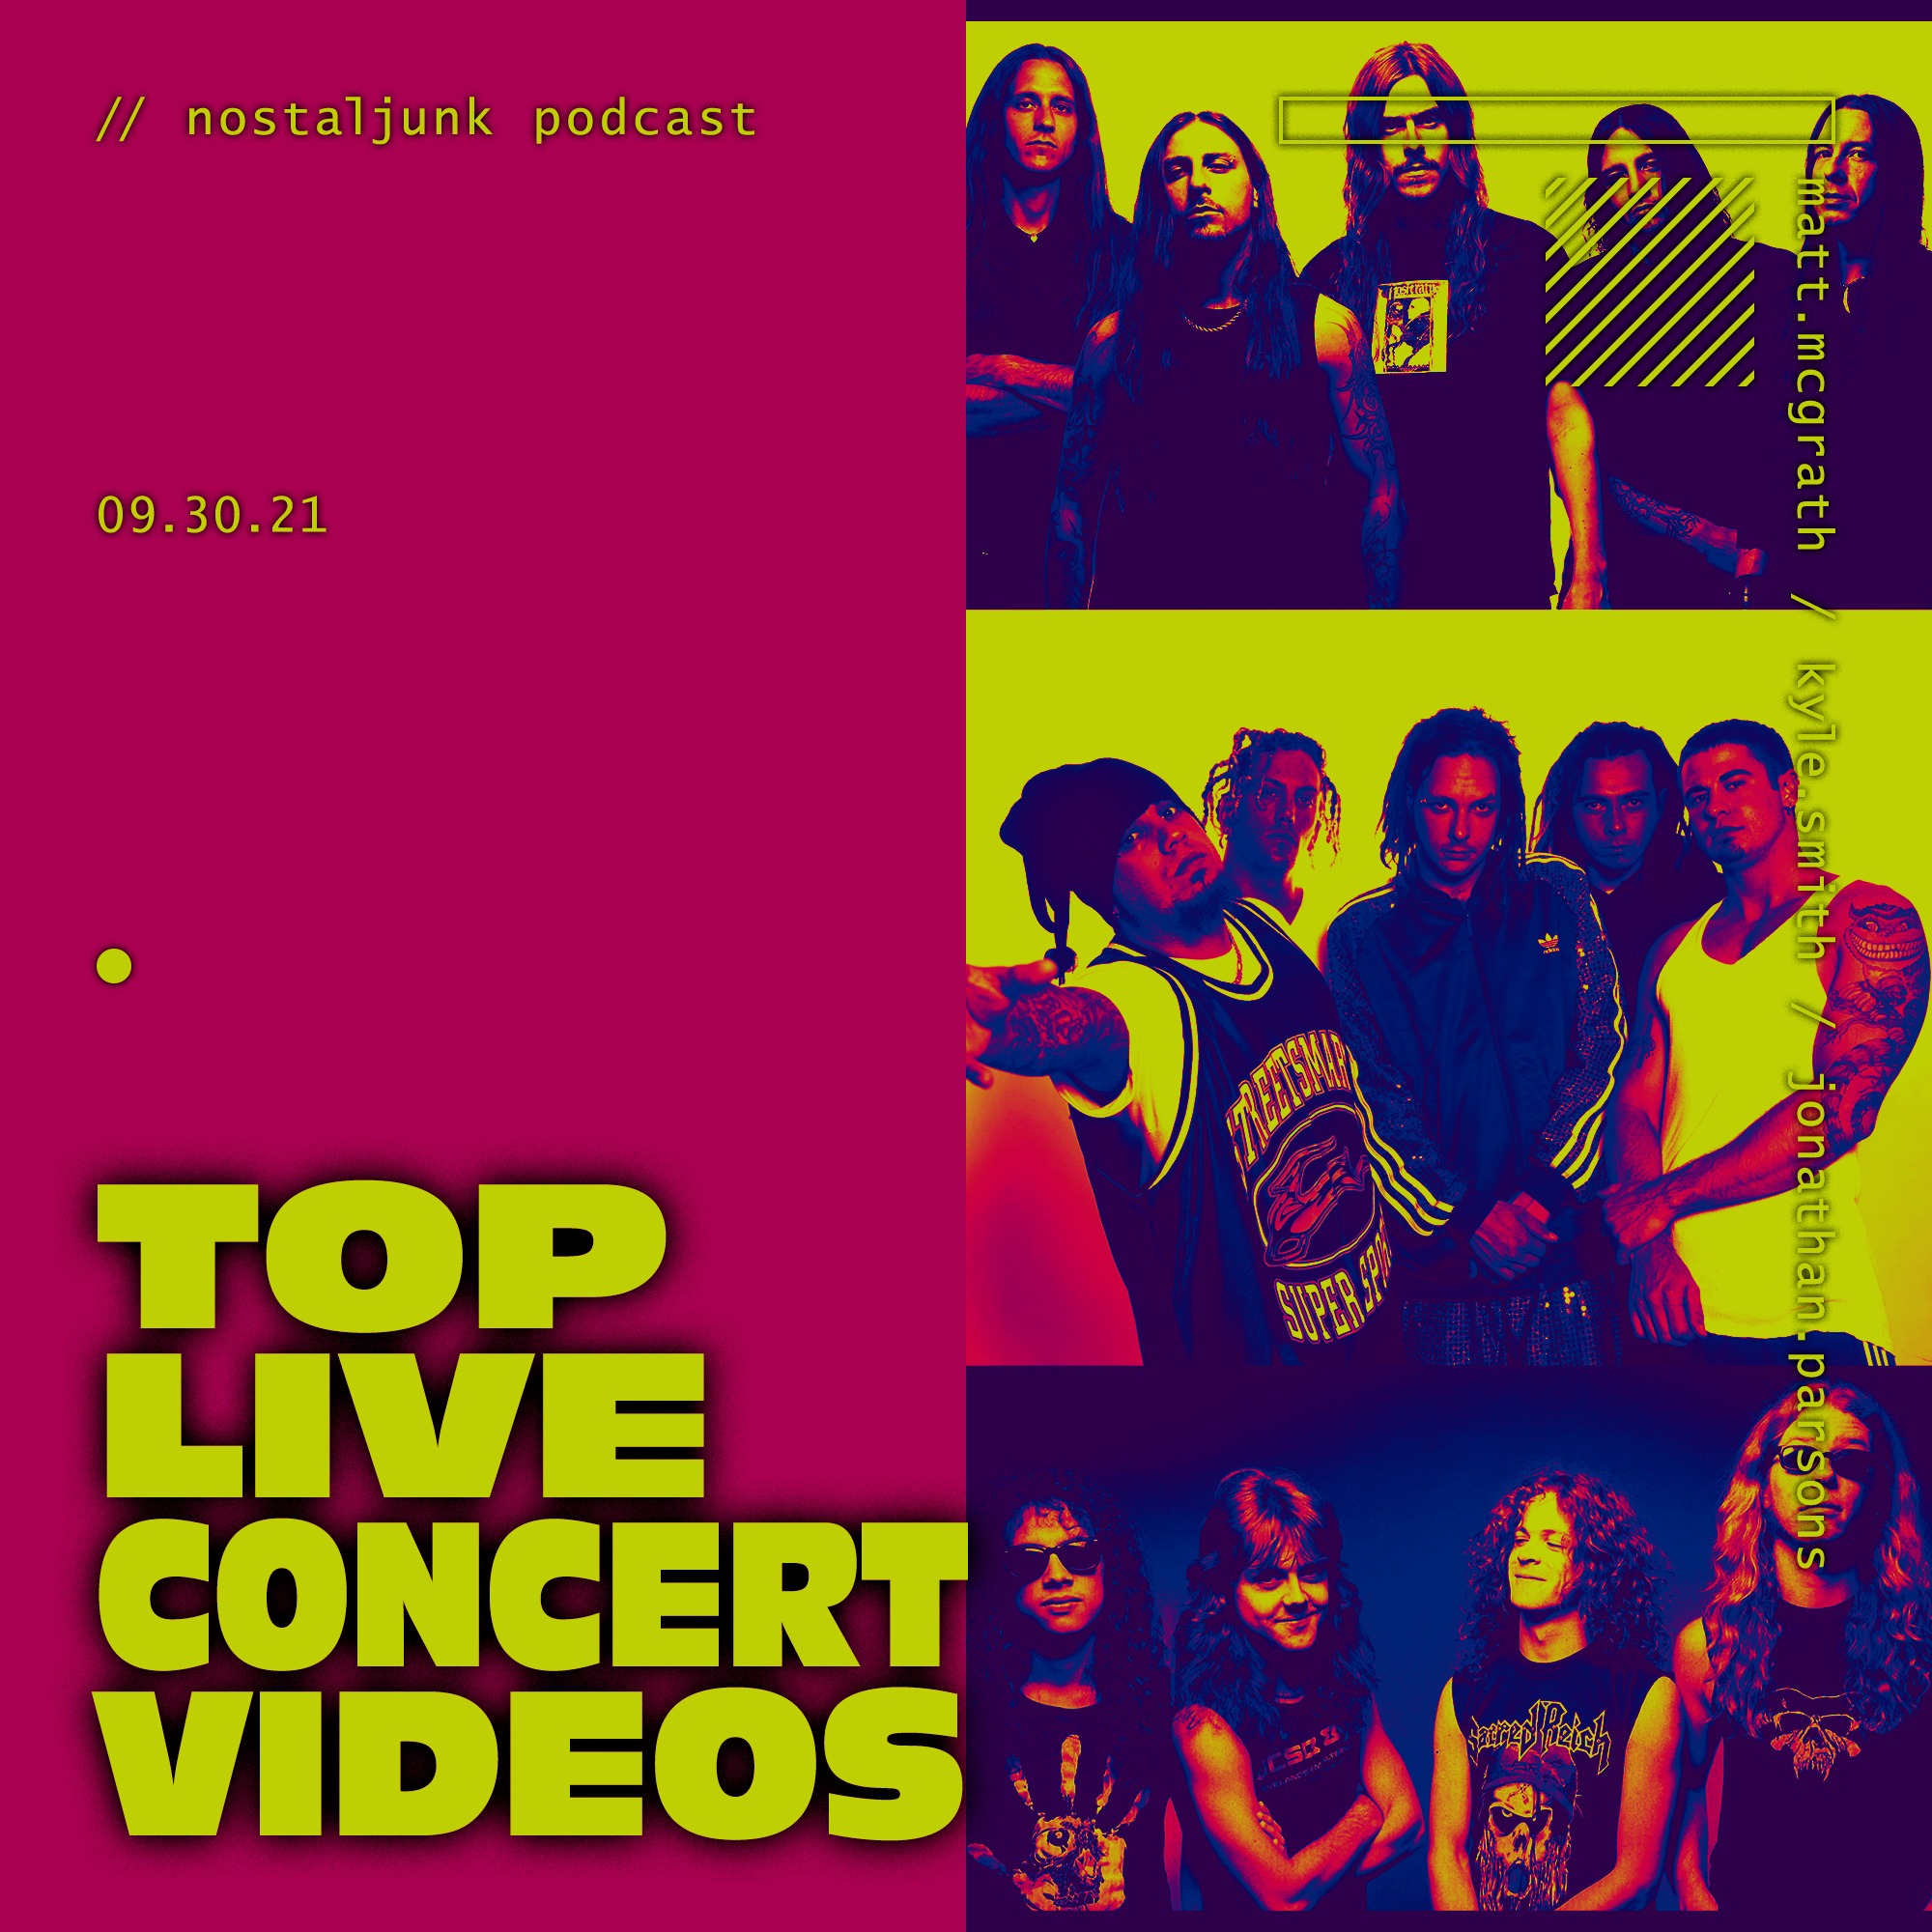 Top Live Concert Videos/DVDs Image